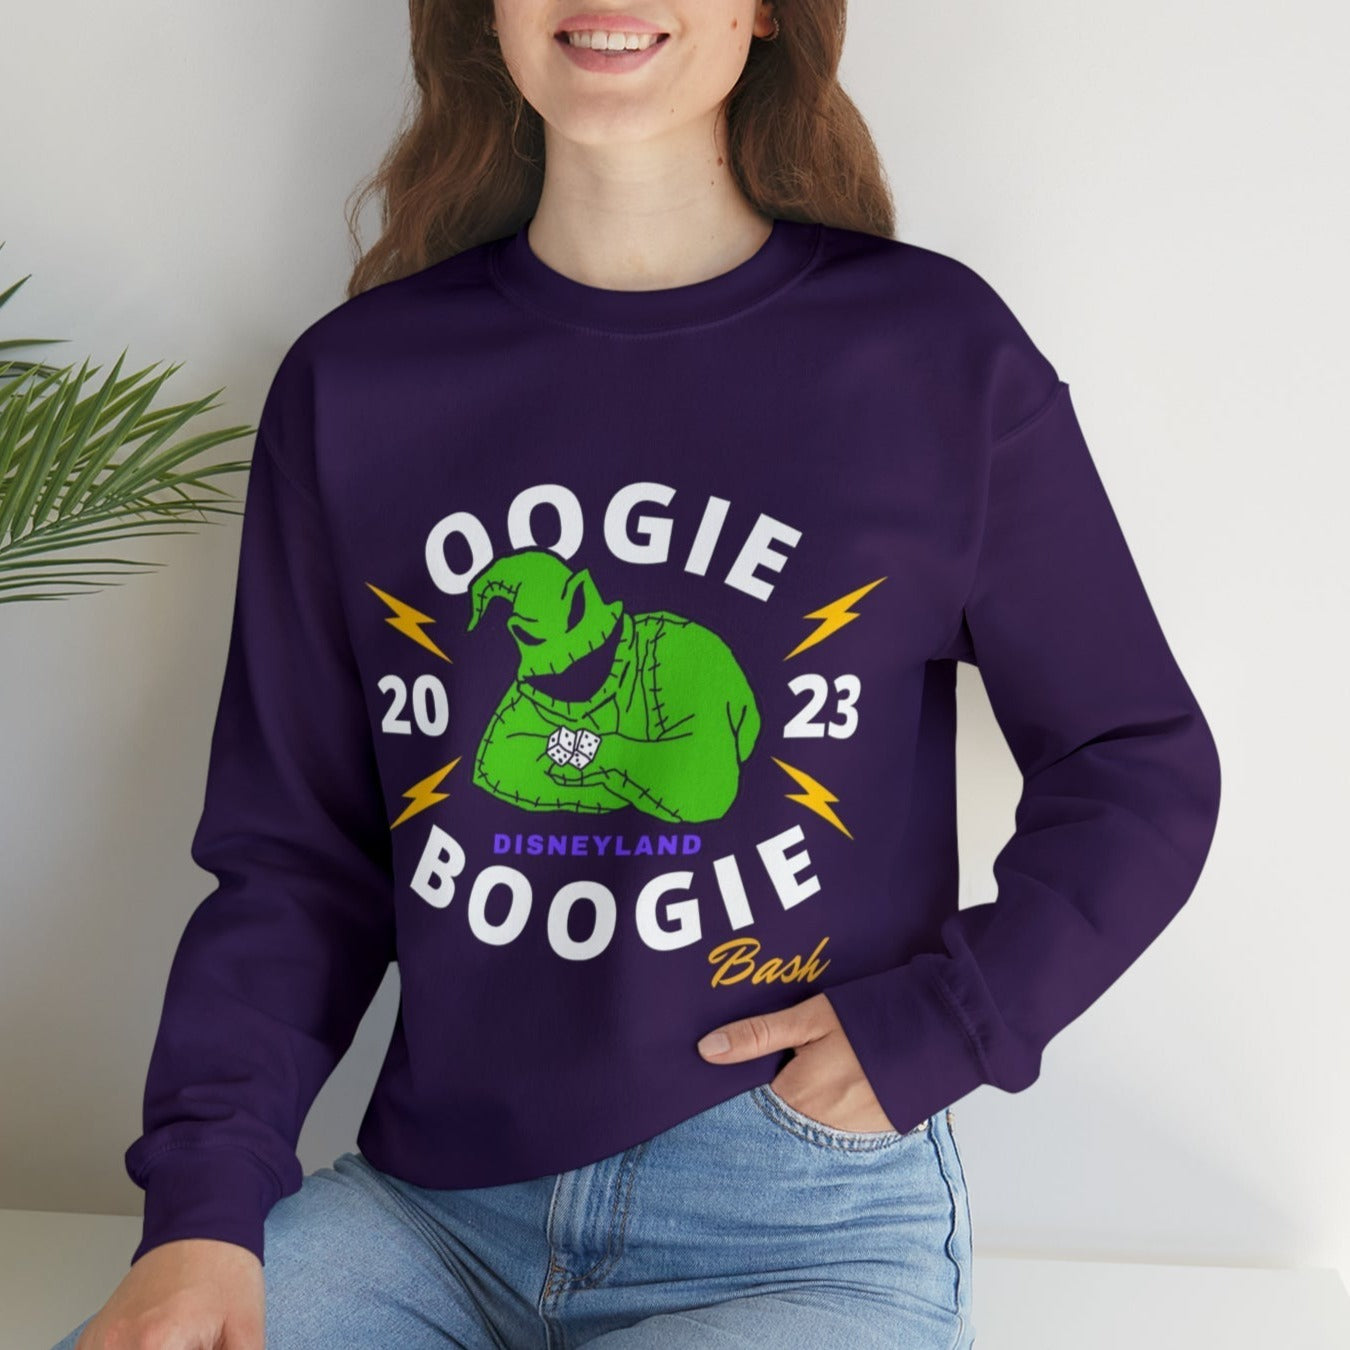 Purple Oogie Boogie Bsh sweatshirt